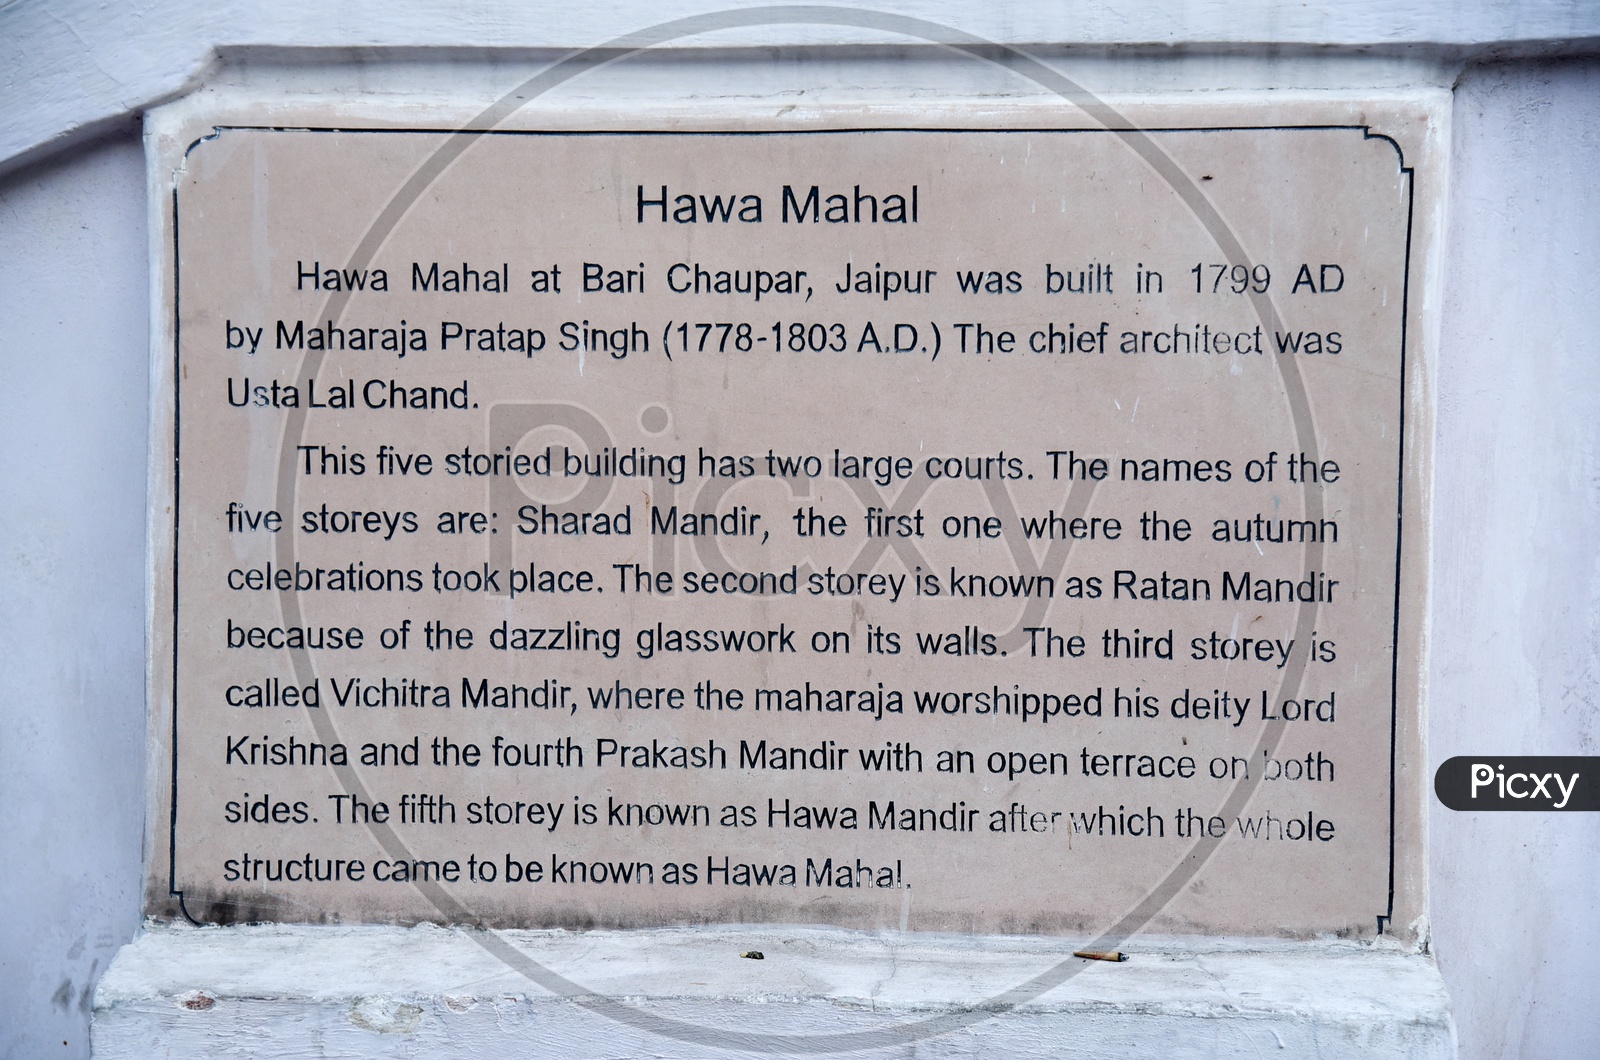 Hawa Mahal